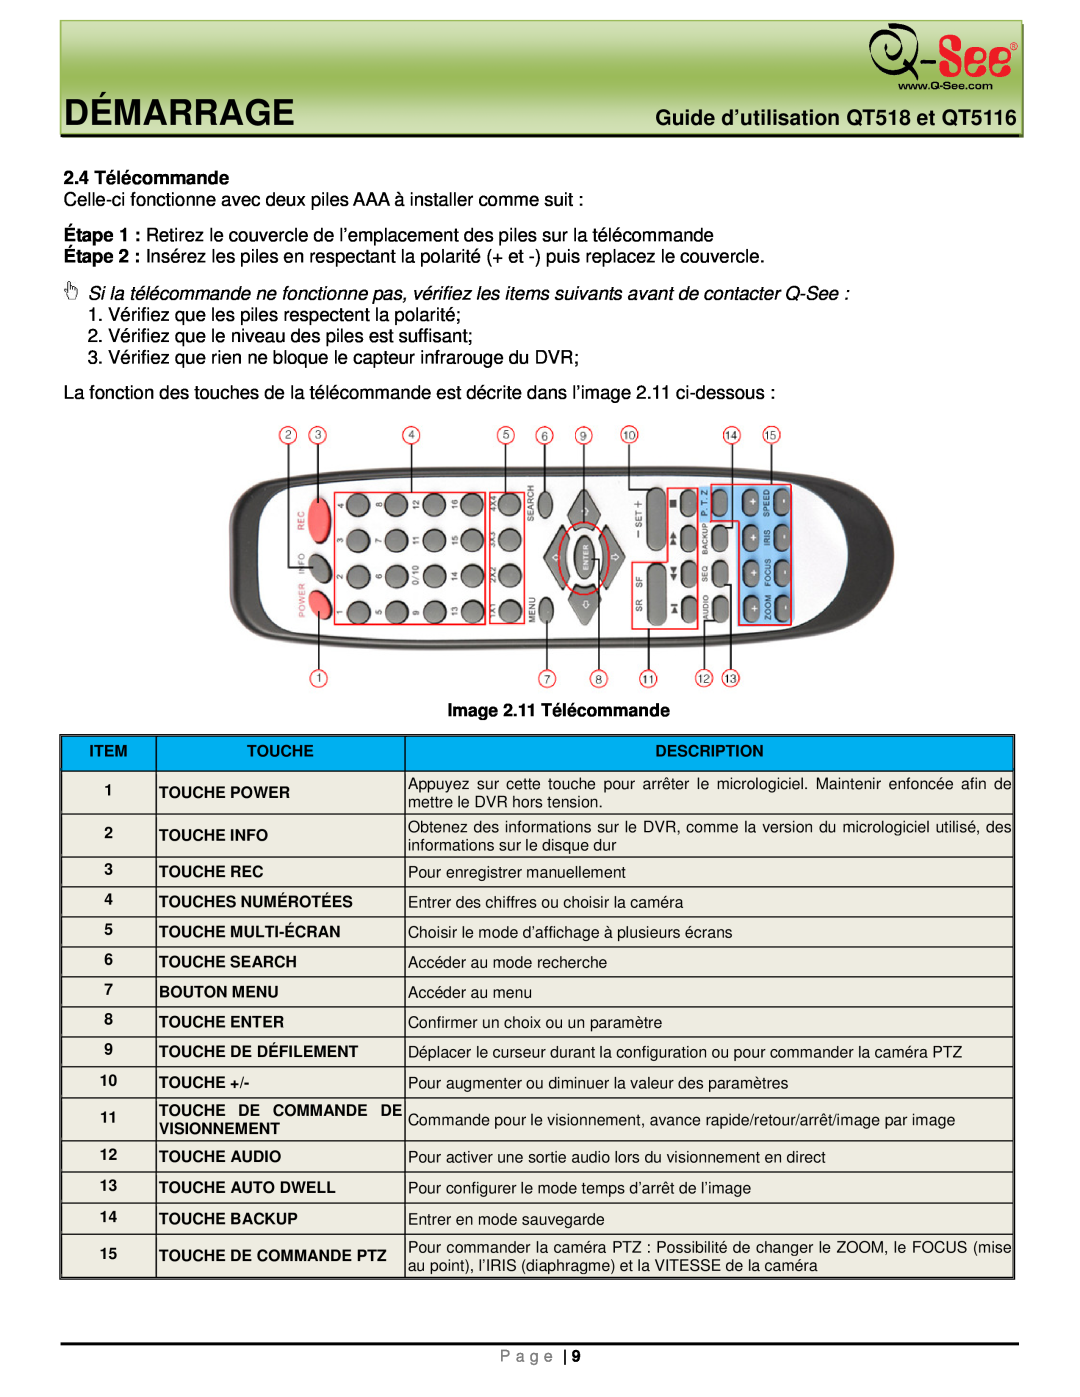 Q-See manual Démarrage, Guide d’utilisation QT518 et QT5116, 2.4 Télécommande 